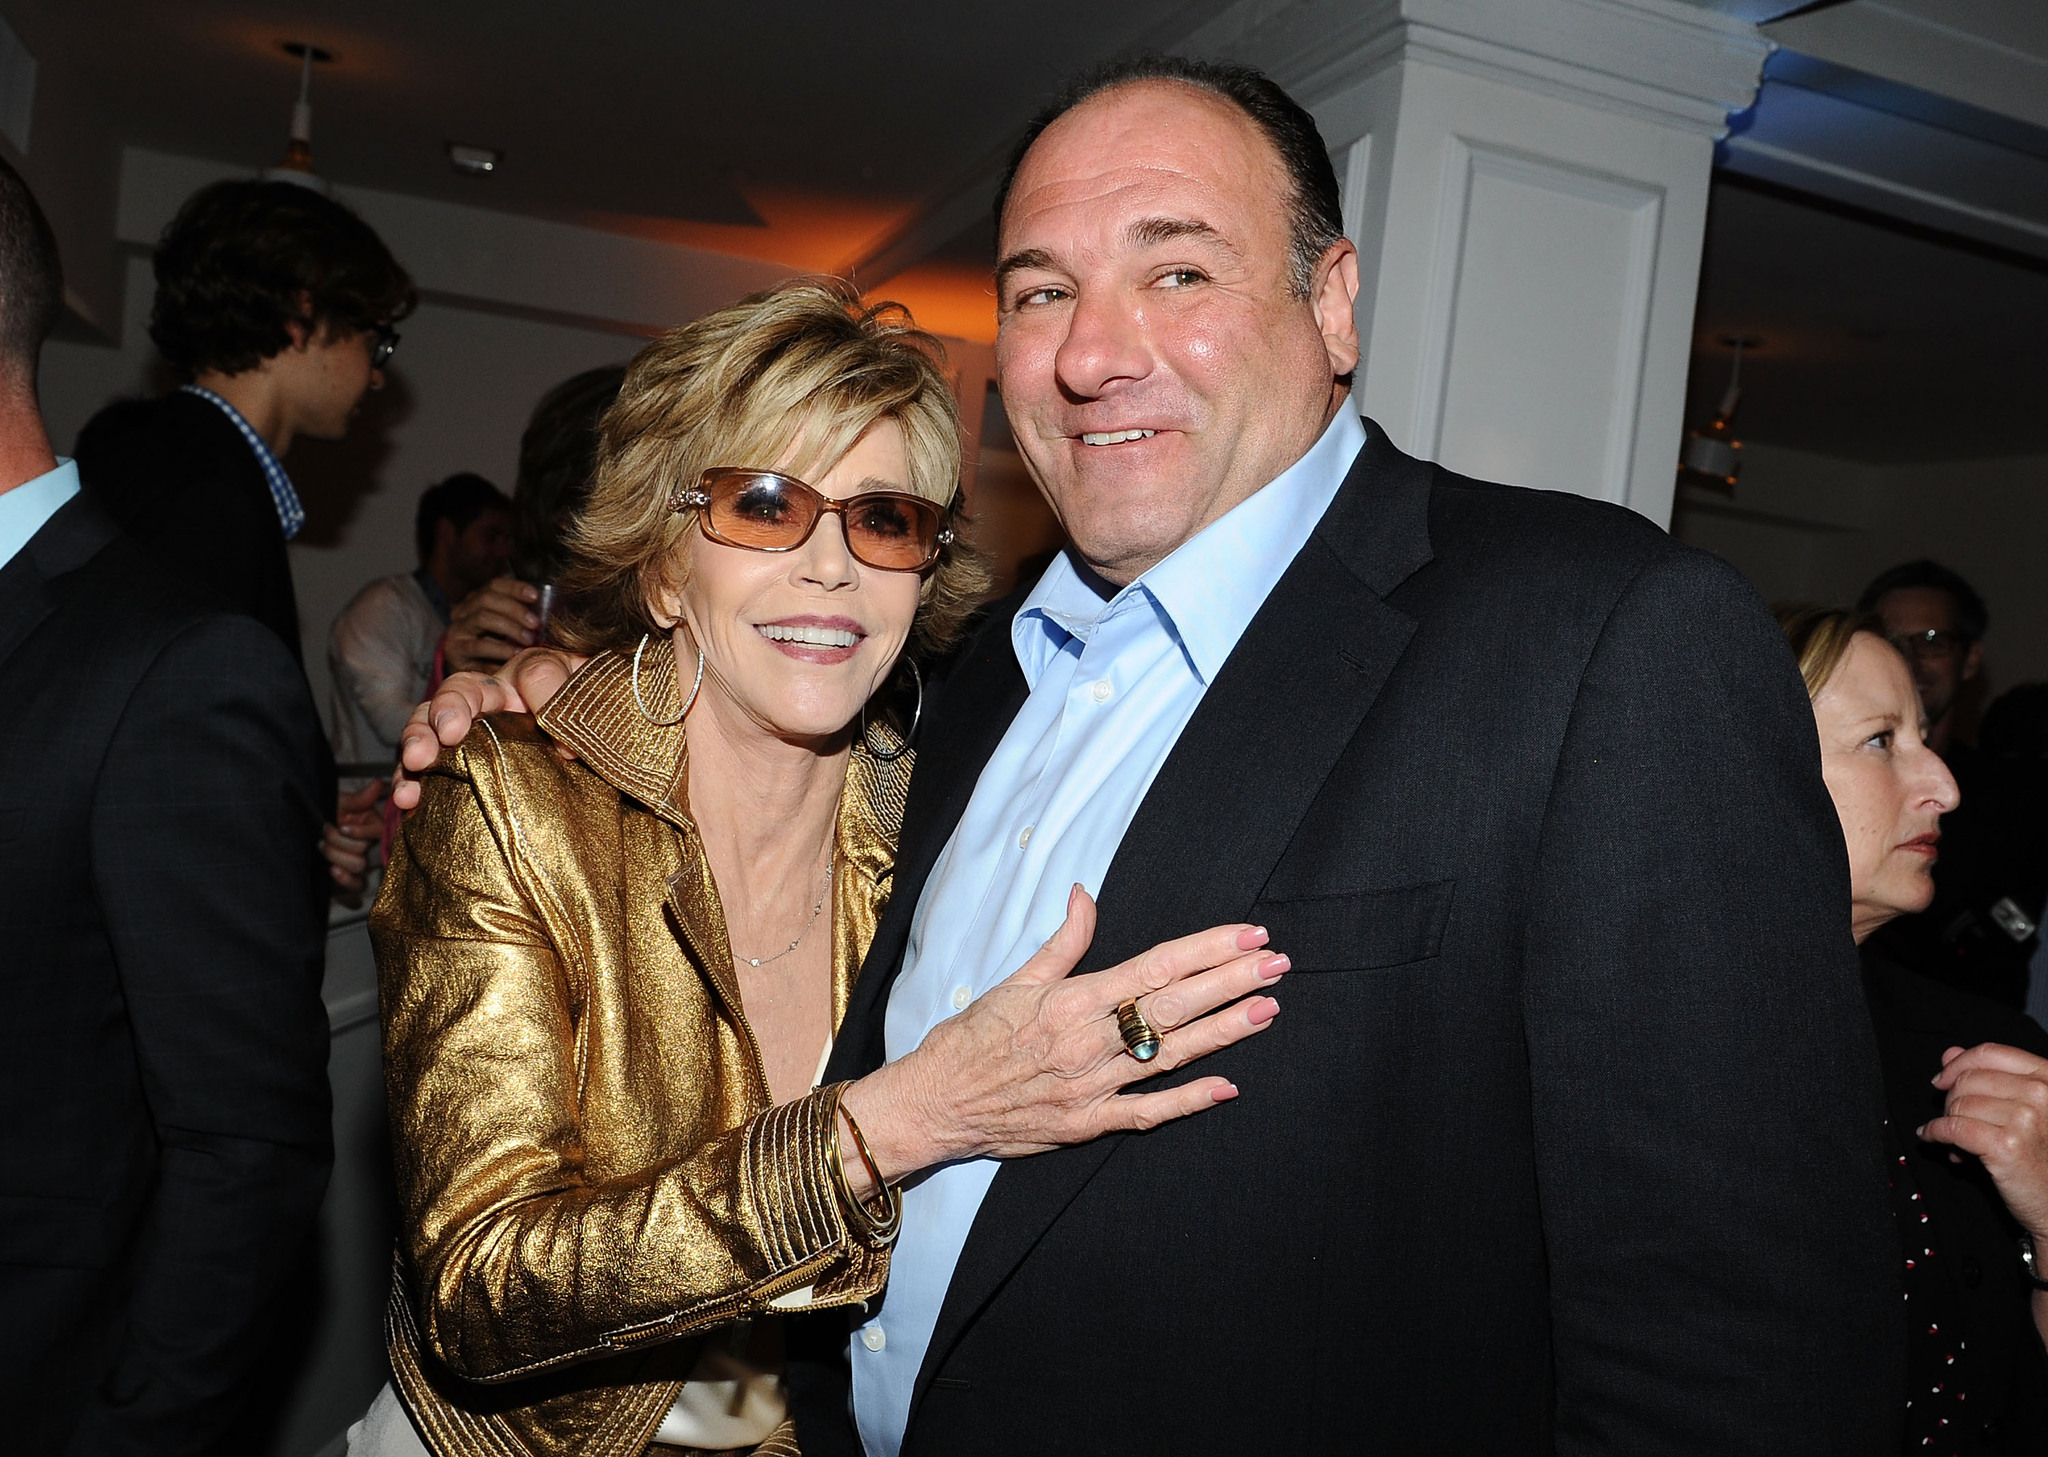 Jane Fonda and James Gandolfini at event of The Newsroom (2012)